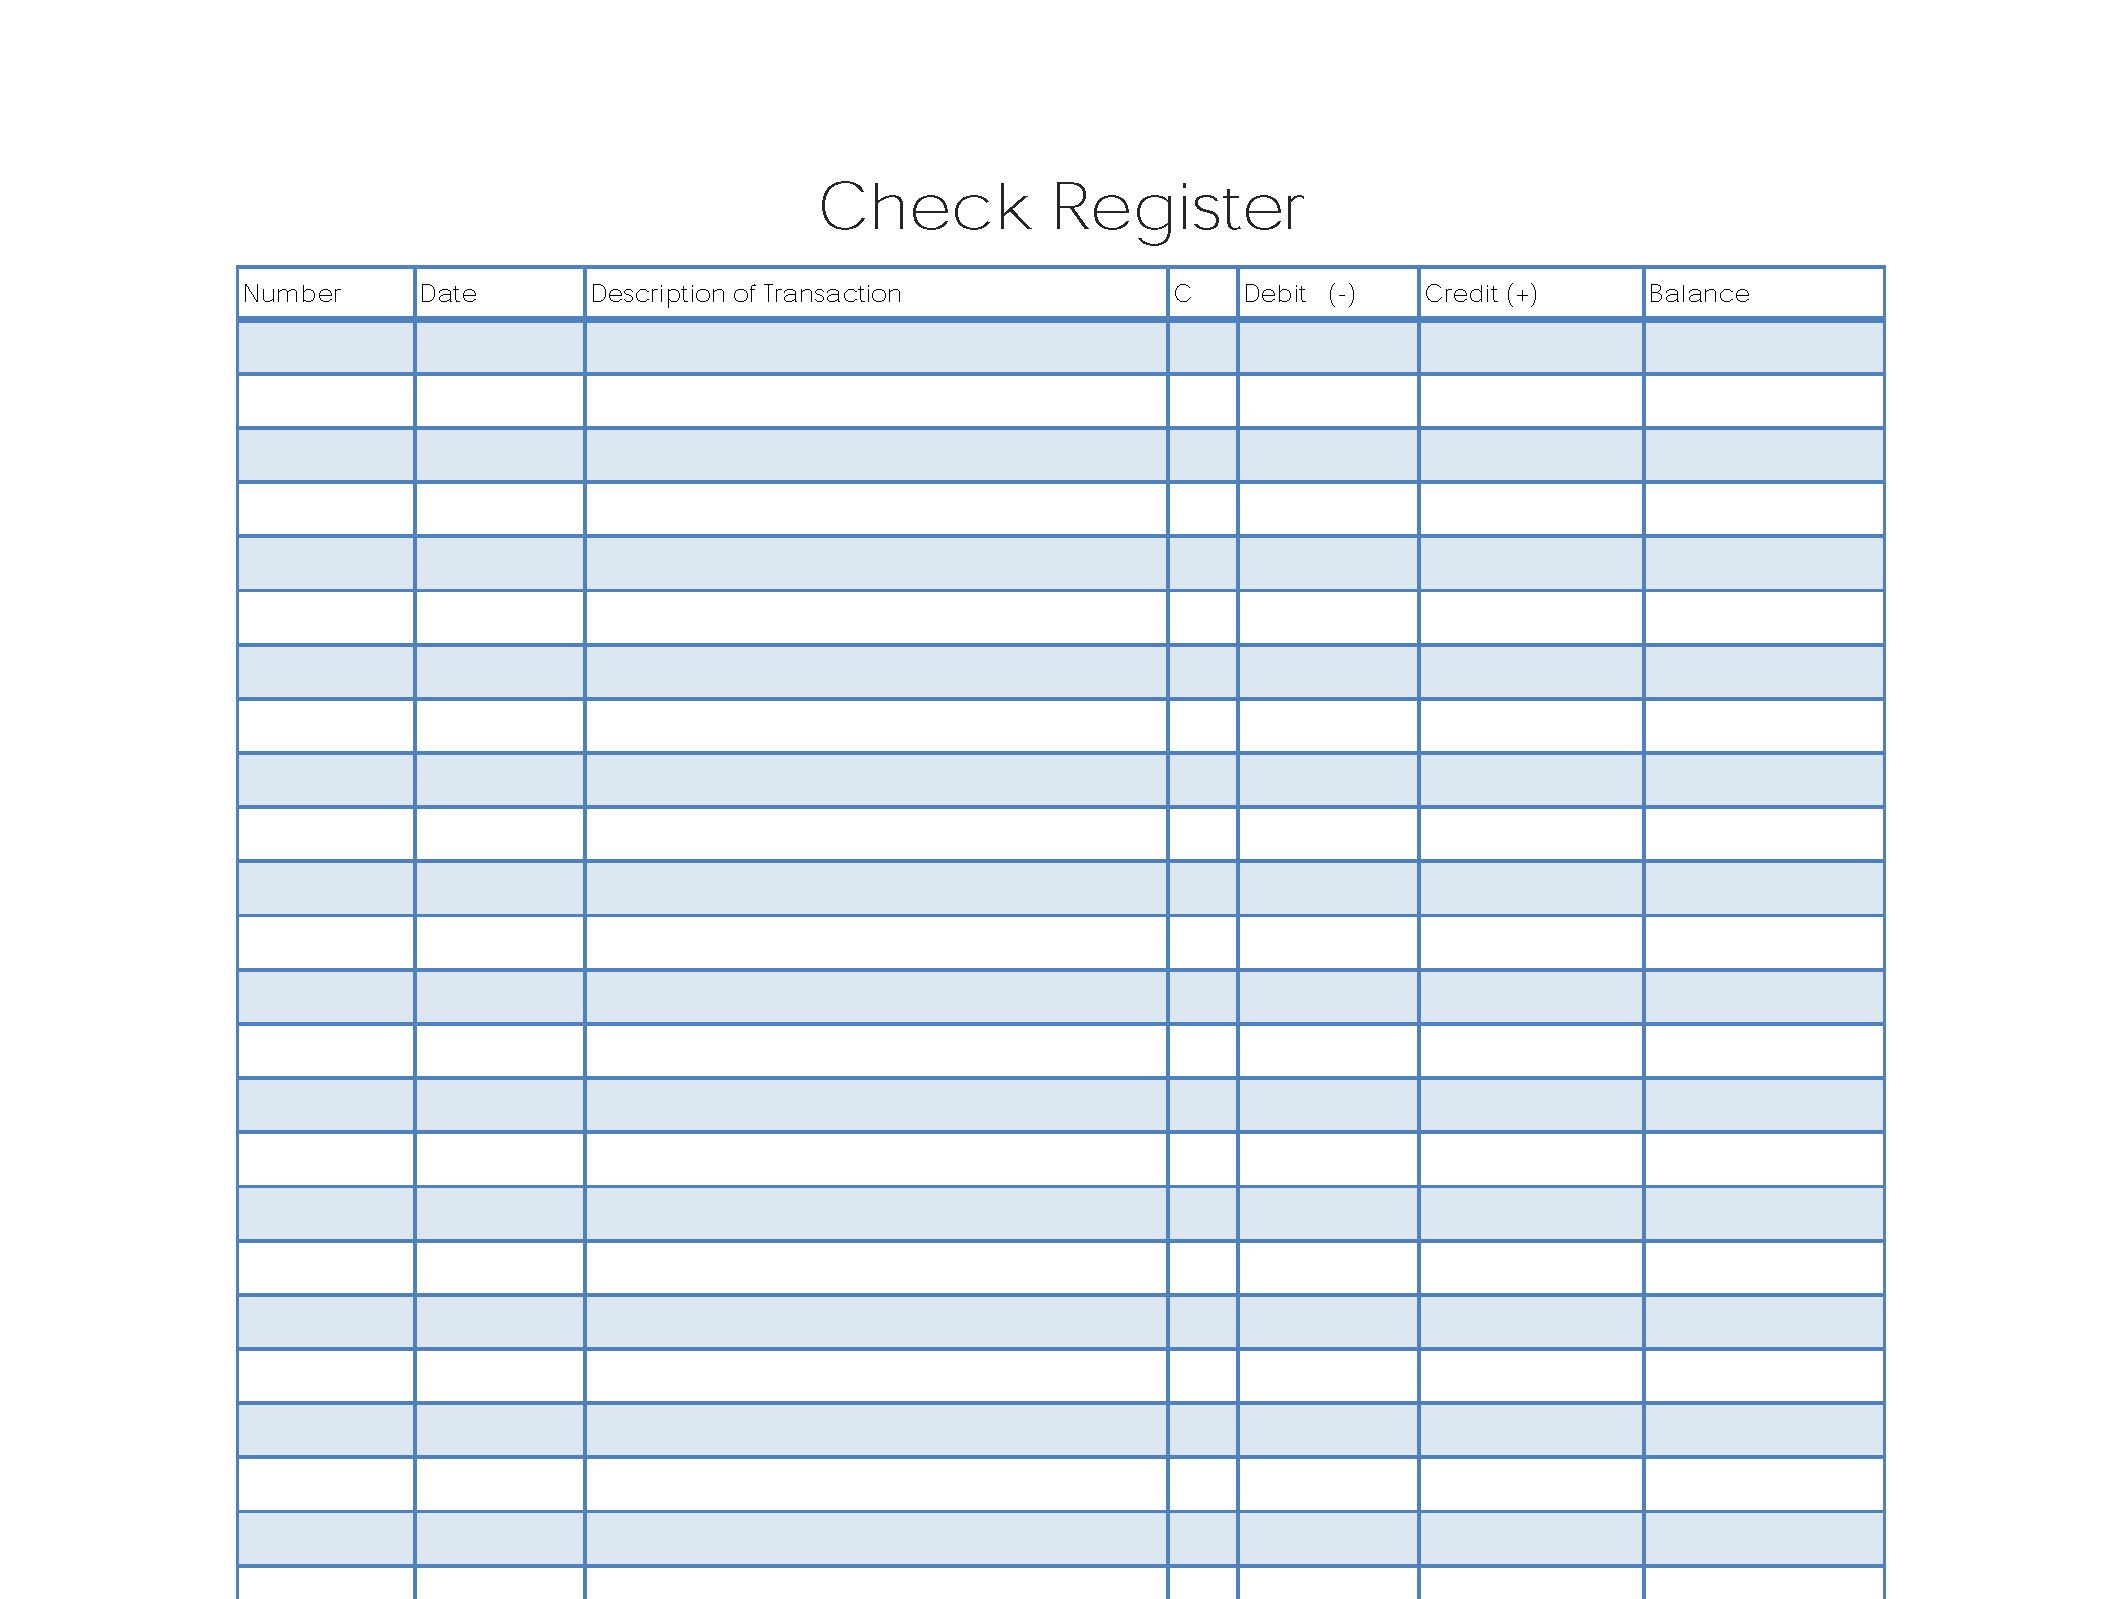 Free Printable Check Register Calendar Calendar Printables Free Templates